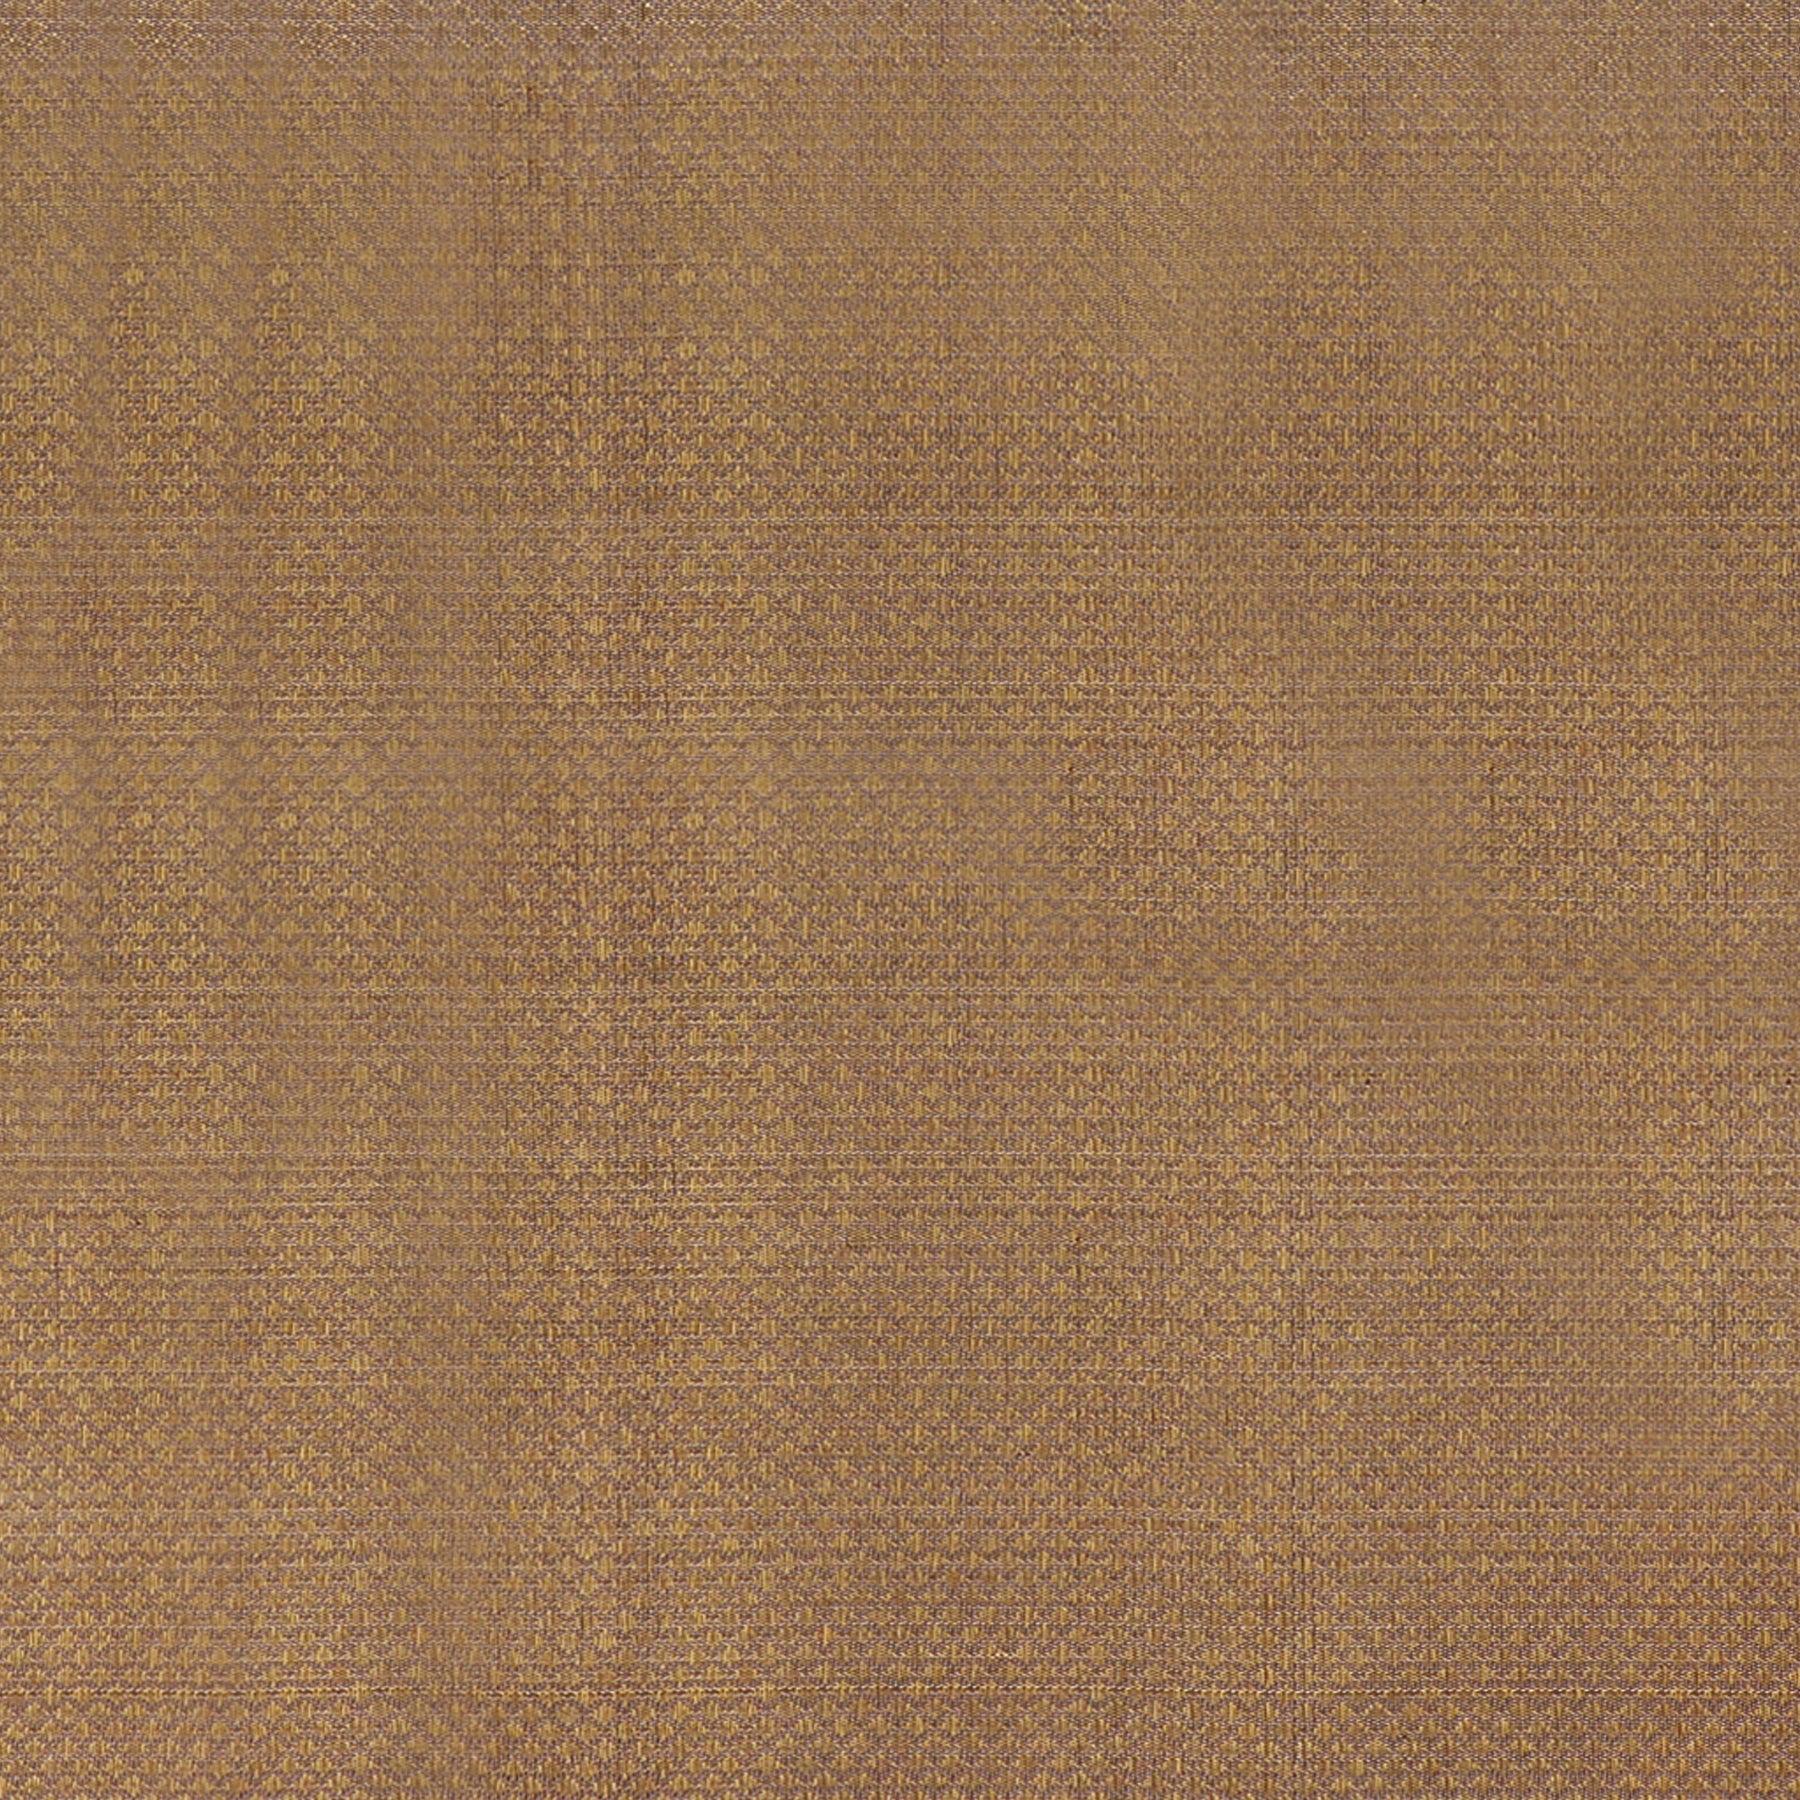 Kanakavalli Kanjivaram Silk Fabric Length 110-27-110301 - Full View Close Up